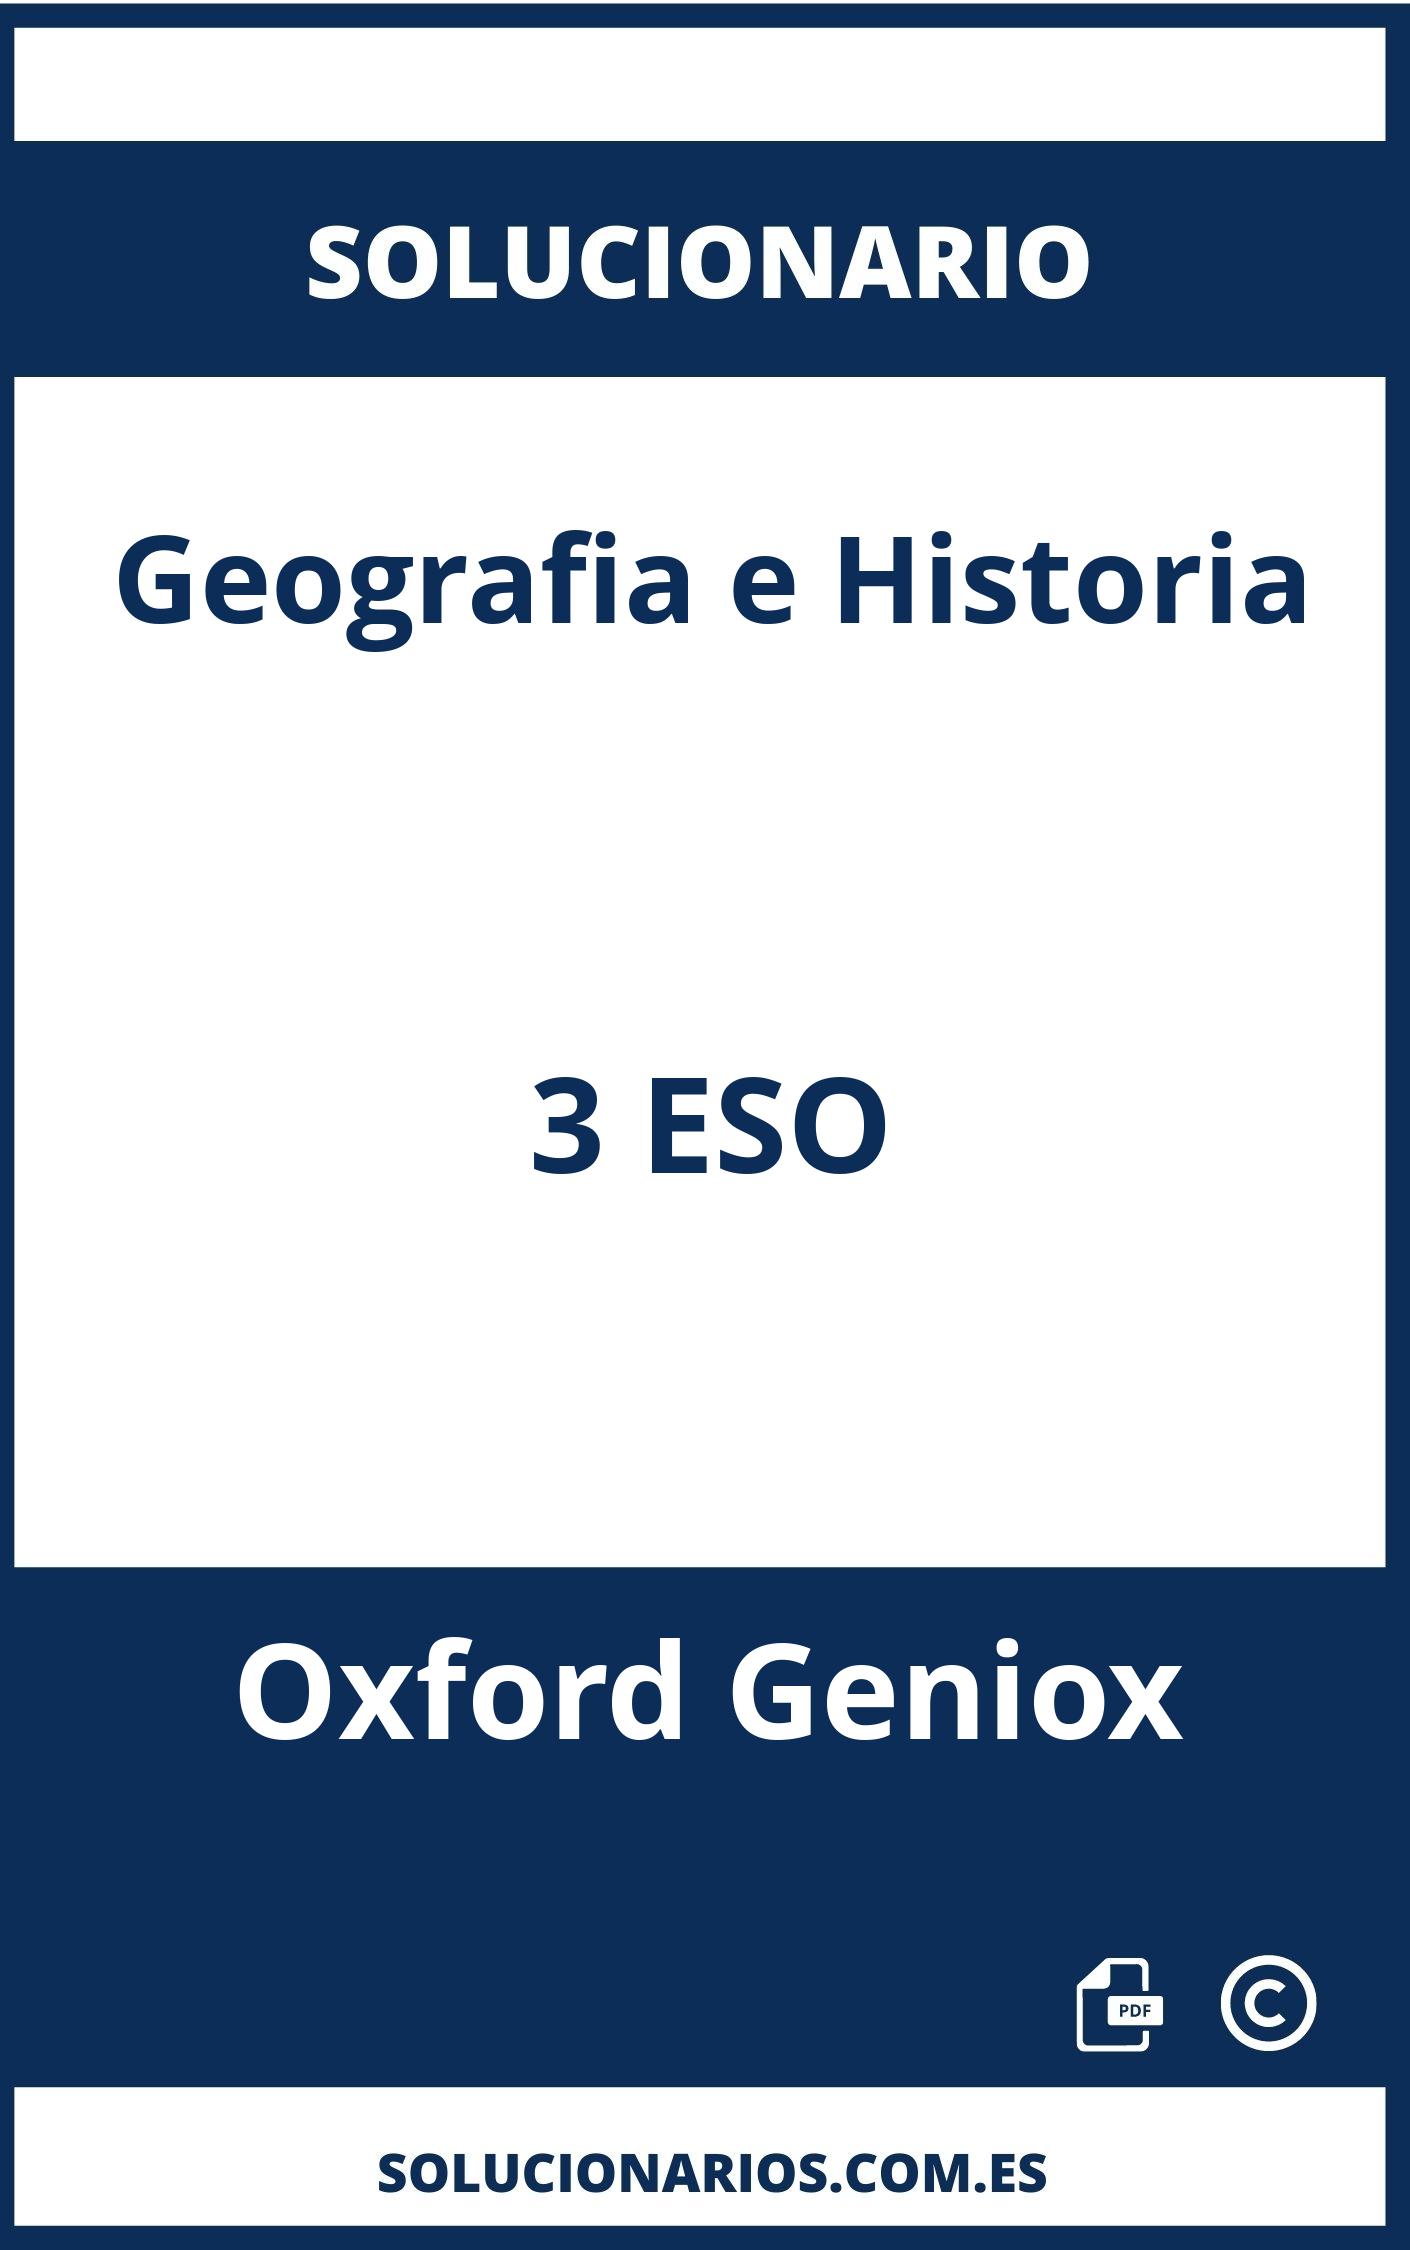 Solucionario Geografia e Historia 3 ESO Oxford Geniox